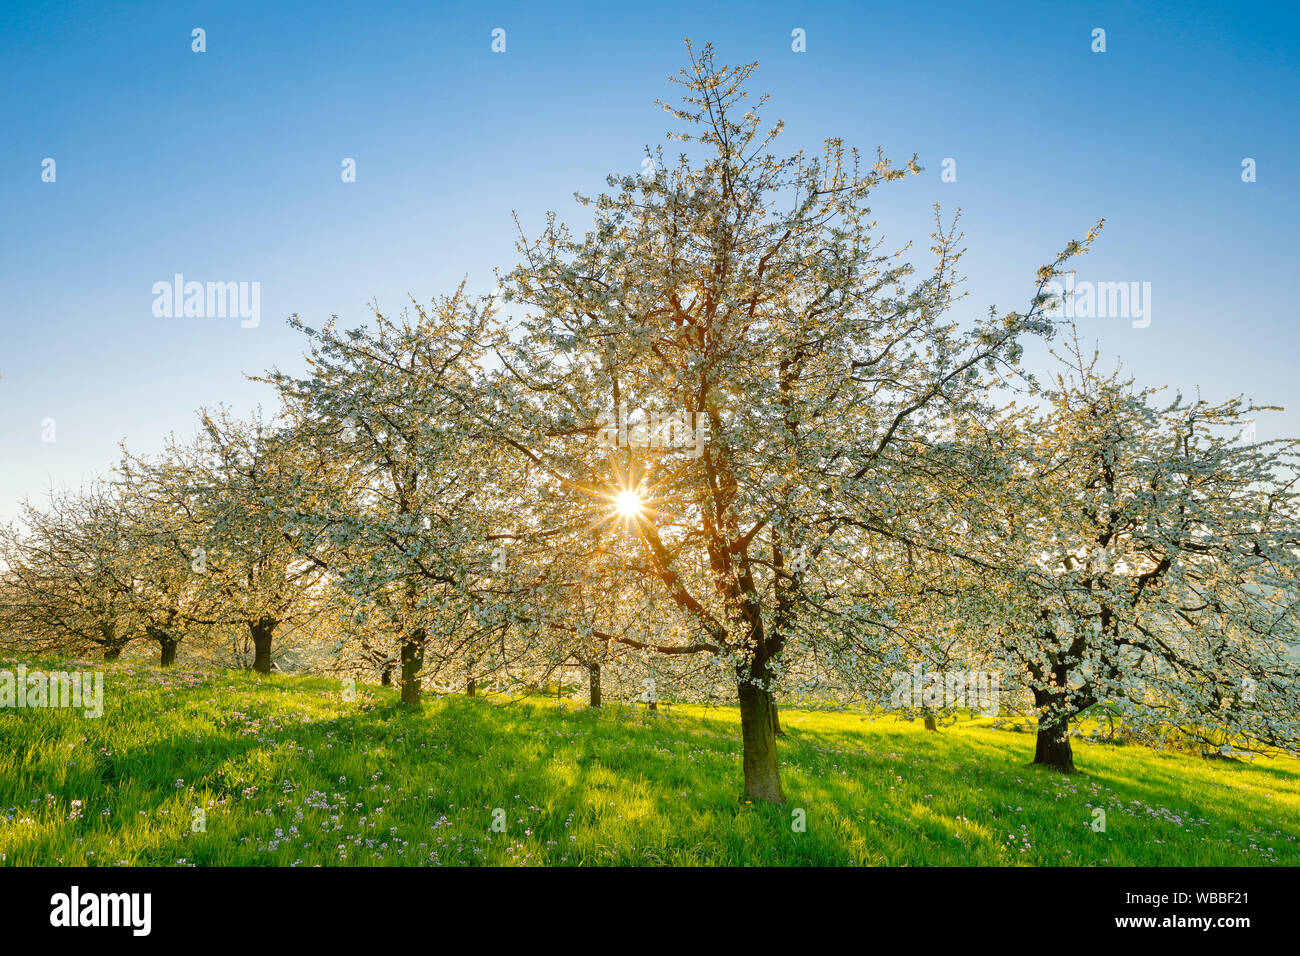 Flowering Cherry Trees (Prunus avium) in spring. Switzerland Stock Photo